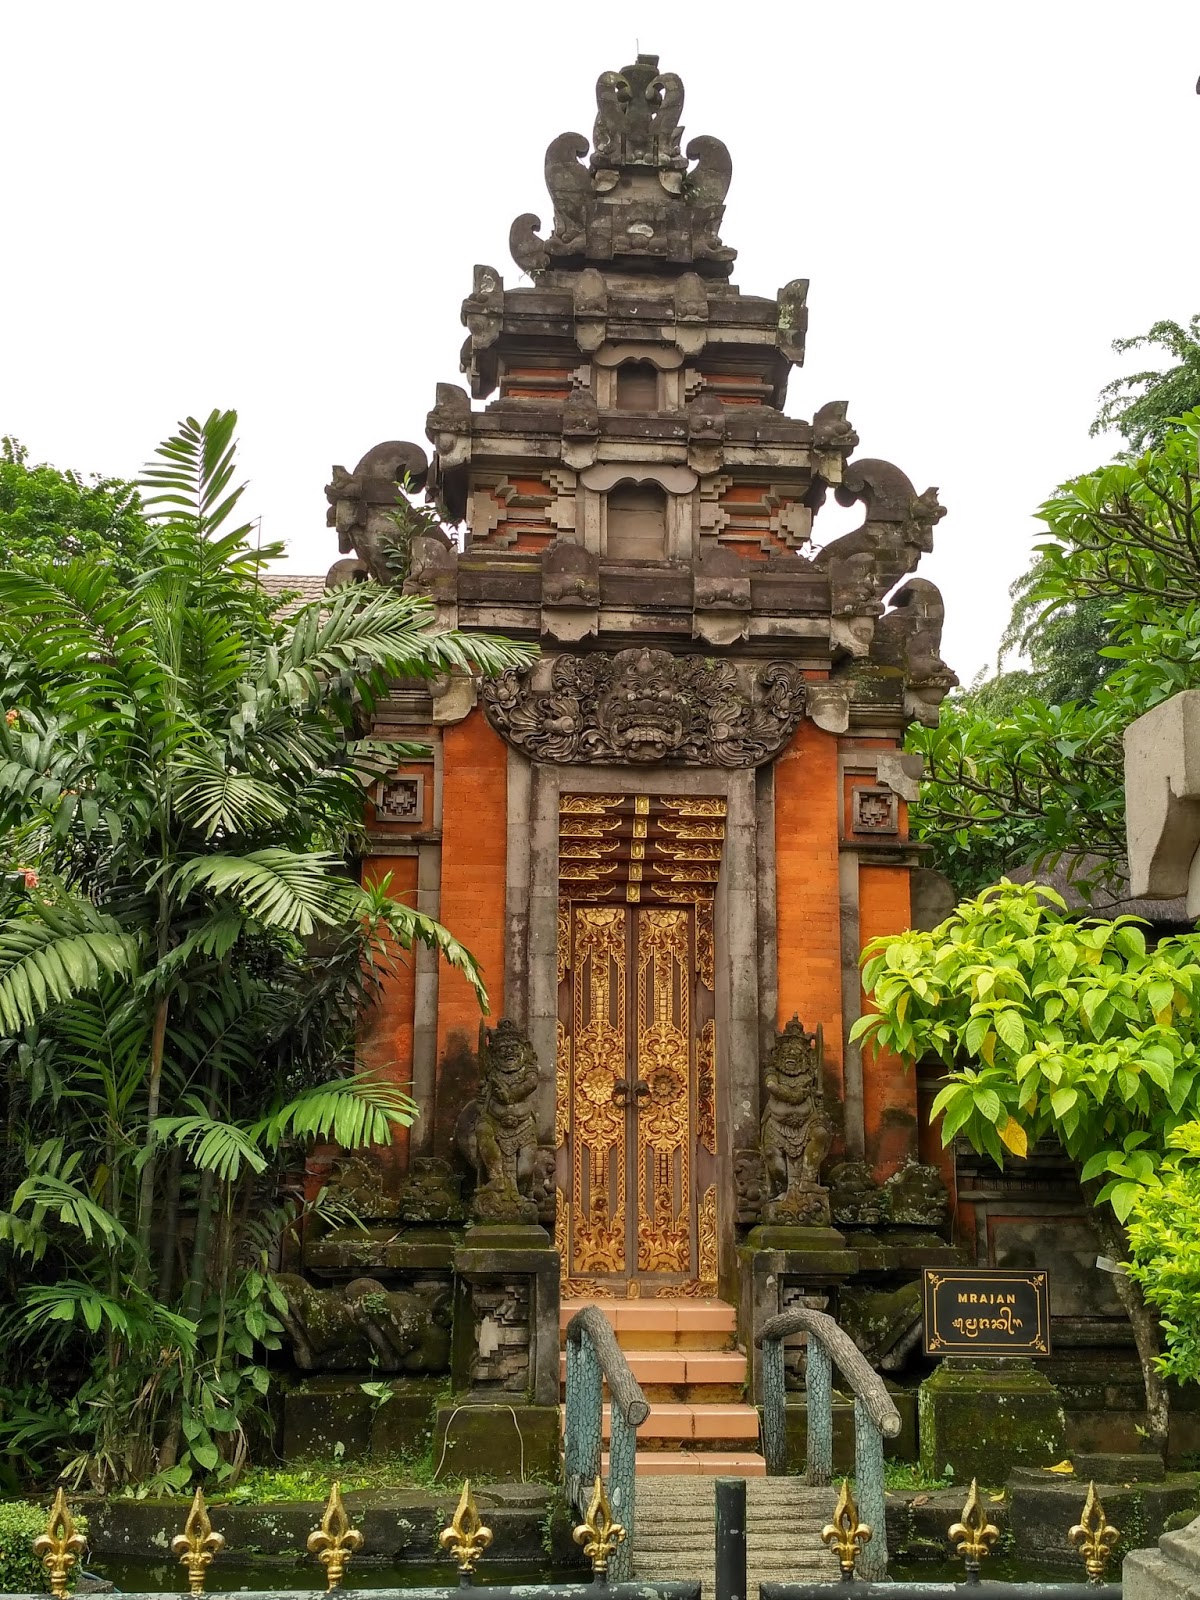  Rumah  Adat  Bali  Gapura  Candi  Bentar  Tradisi Tradisional